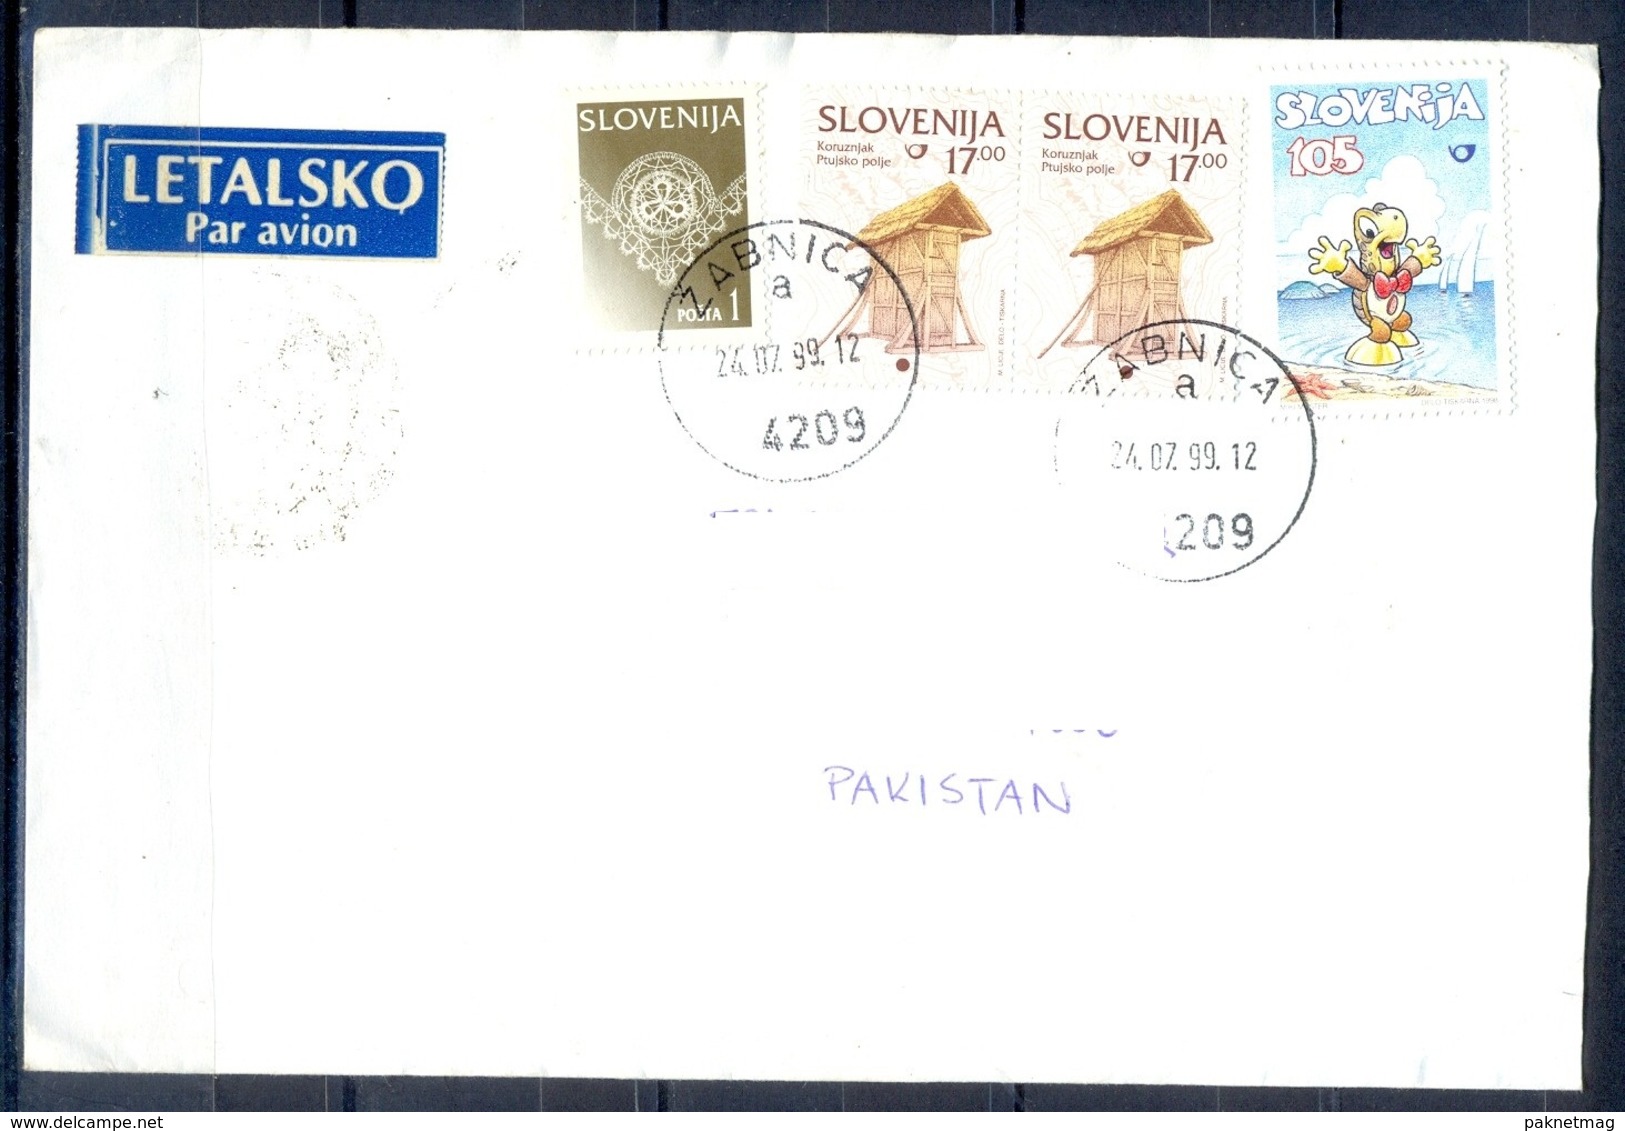 K647- Postal Used Cover. Posted From Slovenija Slovenia To Pakistan.Ship. Cartoon. - Slovenia